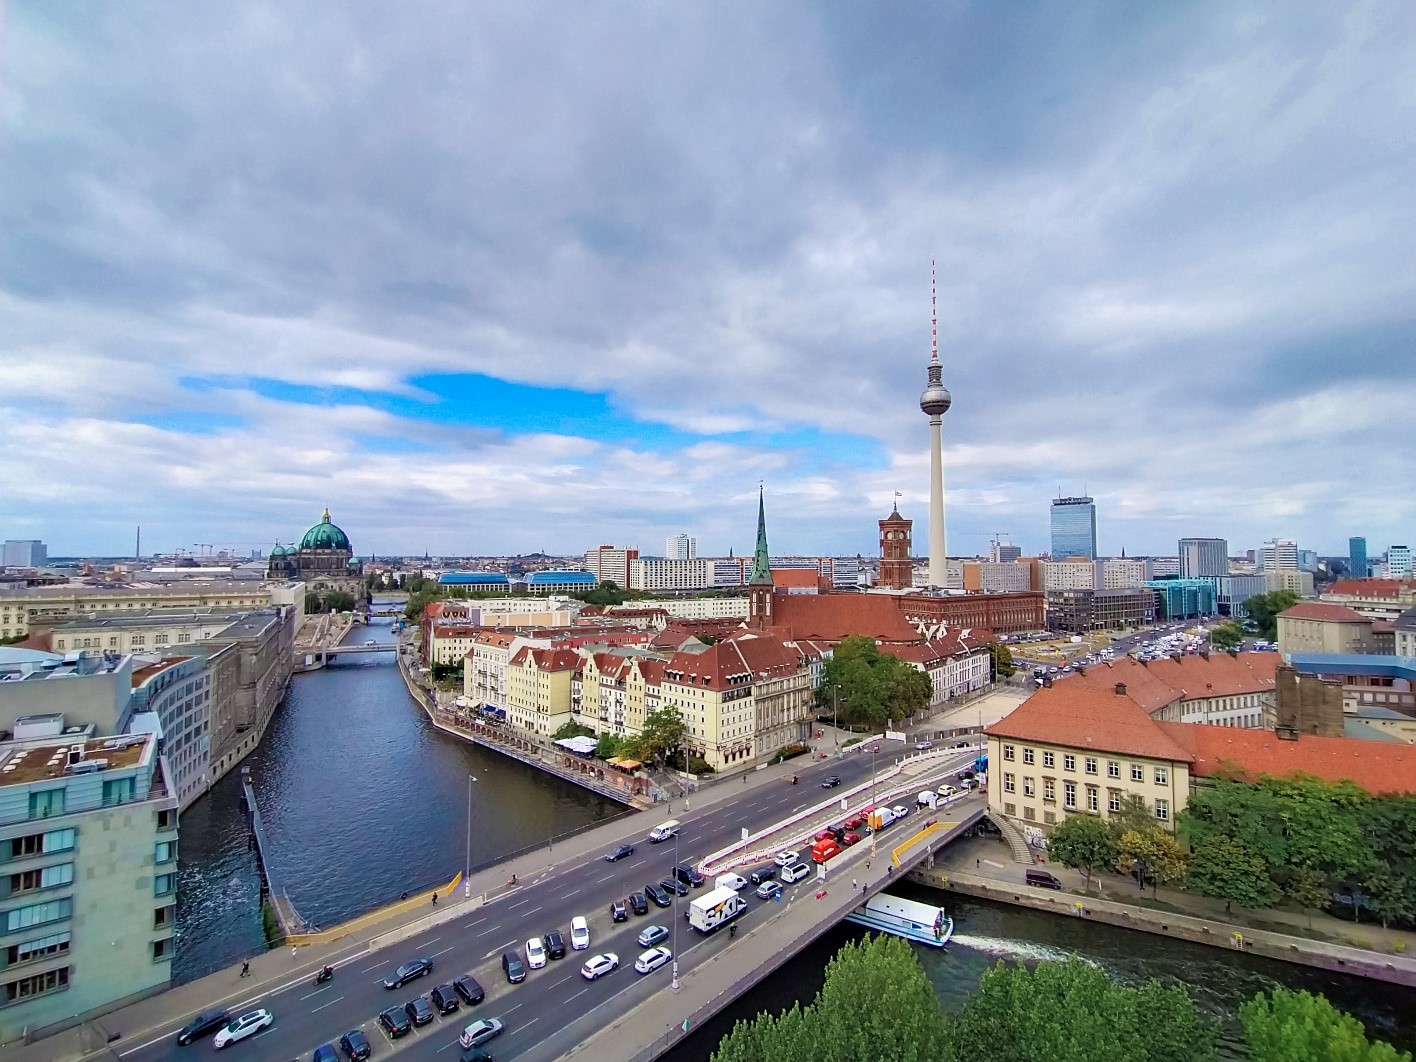 Mùa thu thủ đô Berlin hiện lên đầy rực rỡ qua bốn góc ảnh tuyệt đẹp của OPPO A9 2020 - Ảnh 10.